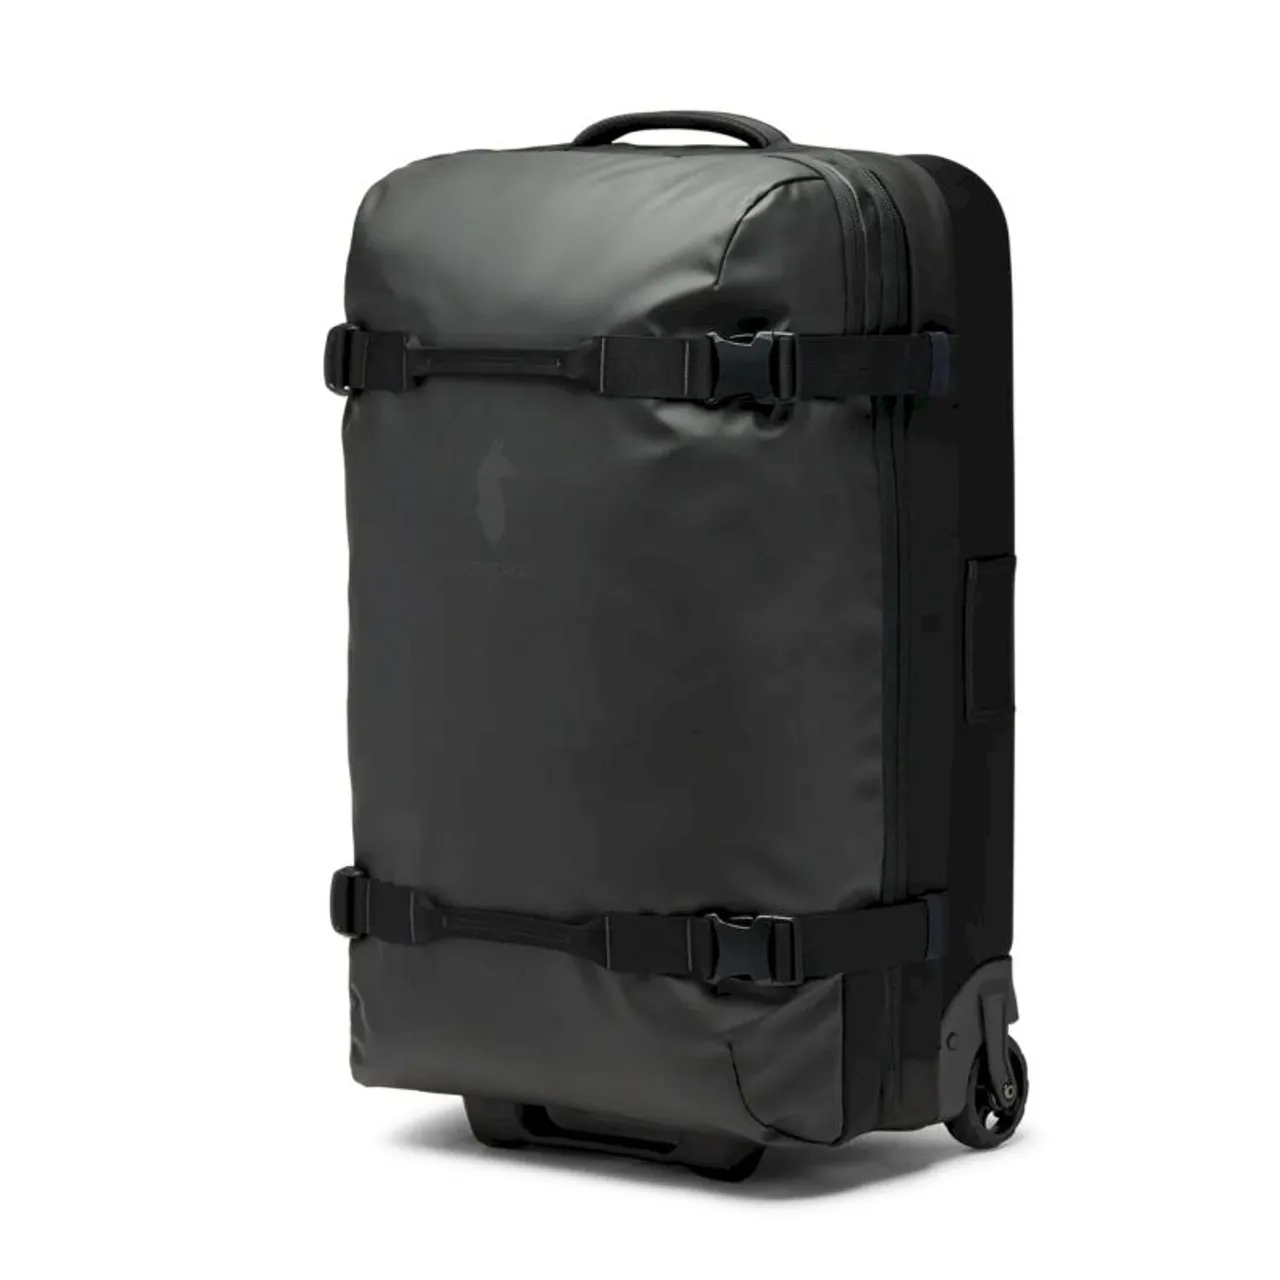 Cotopaxi Allpa Roller Bag 70L - Reisetasche mit Rollen Black 70 L